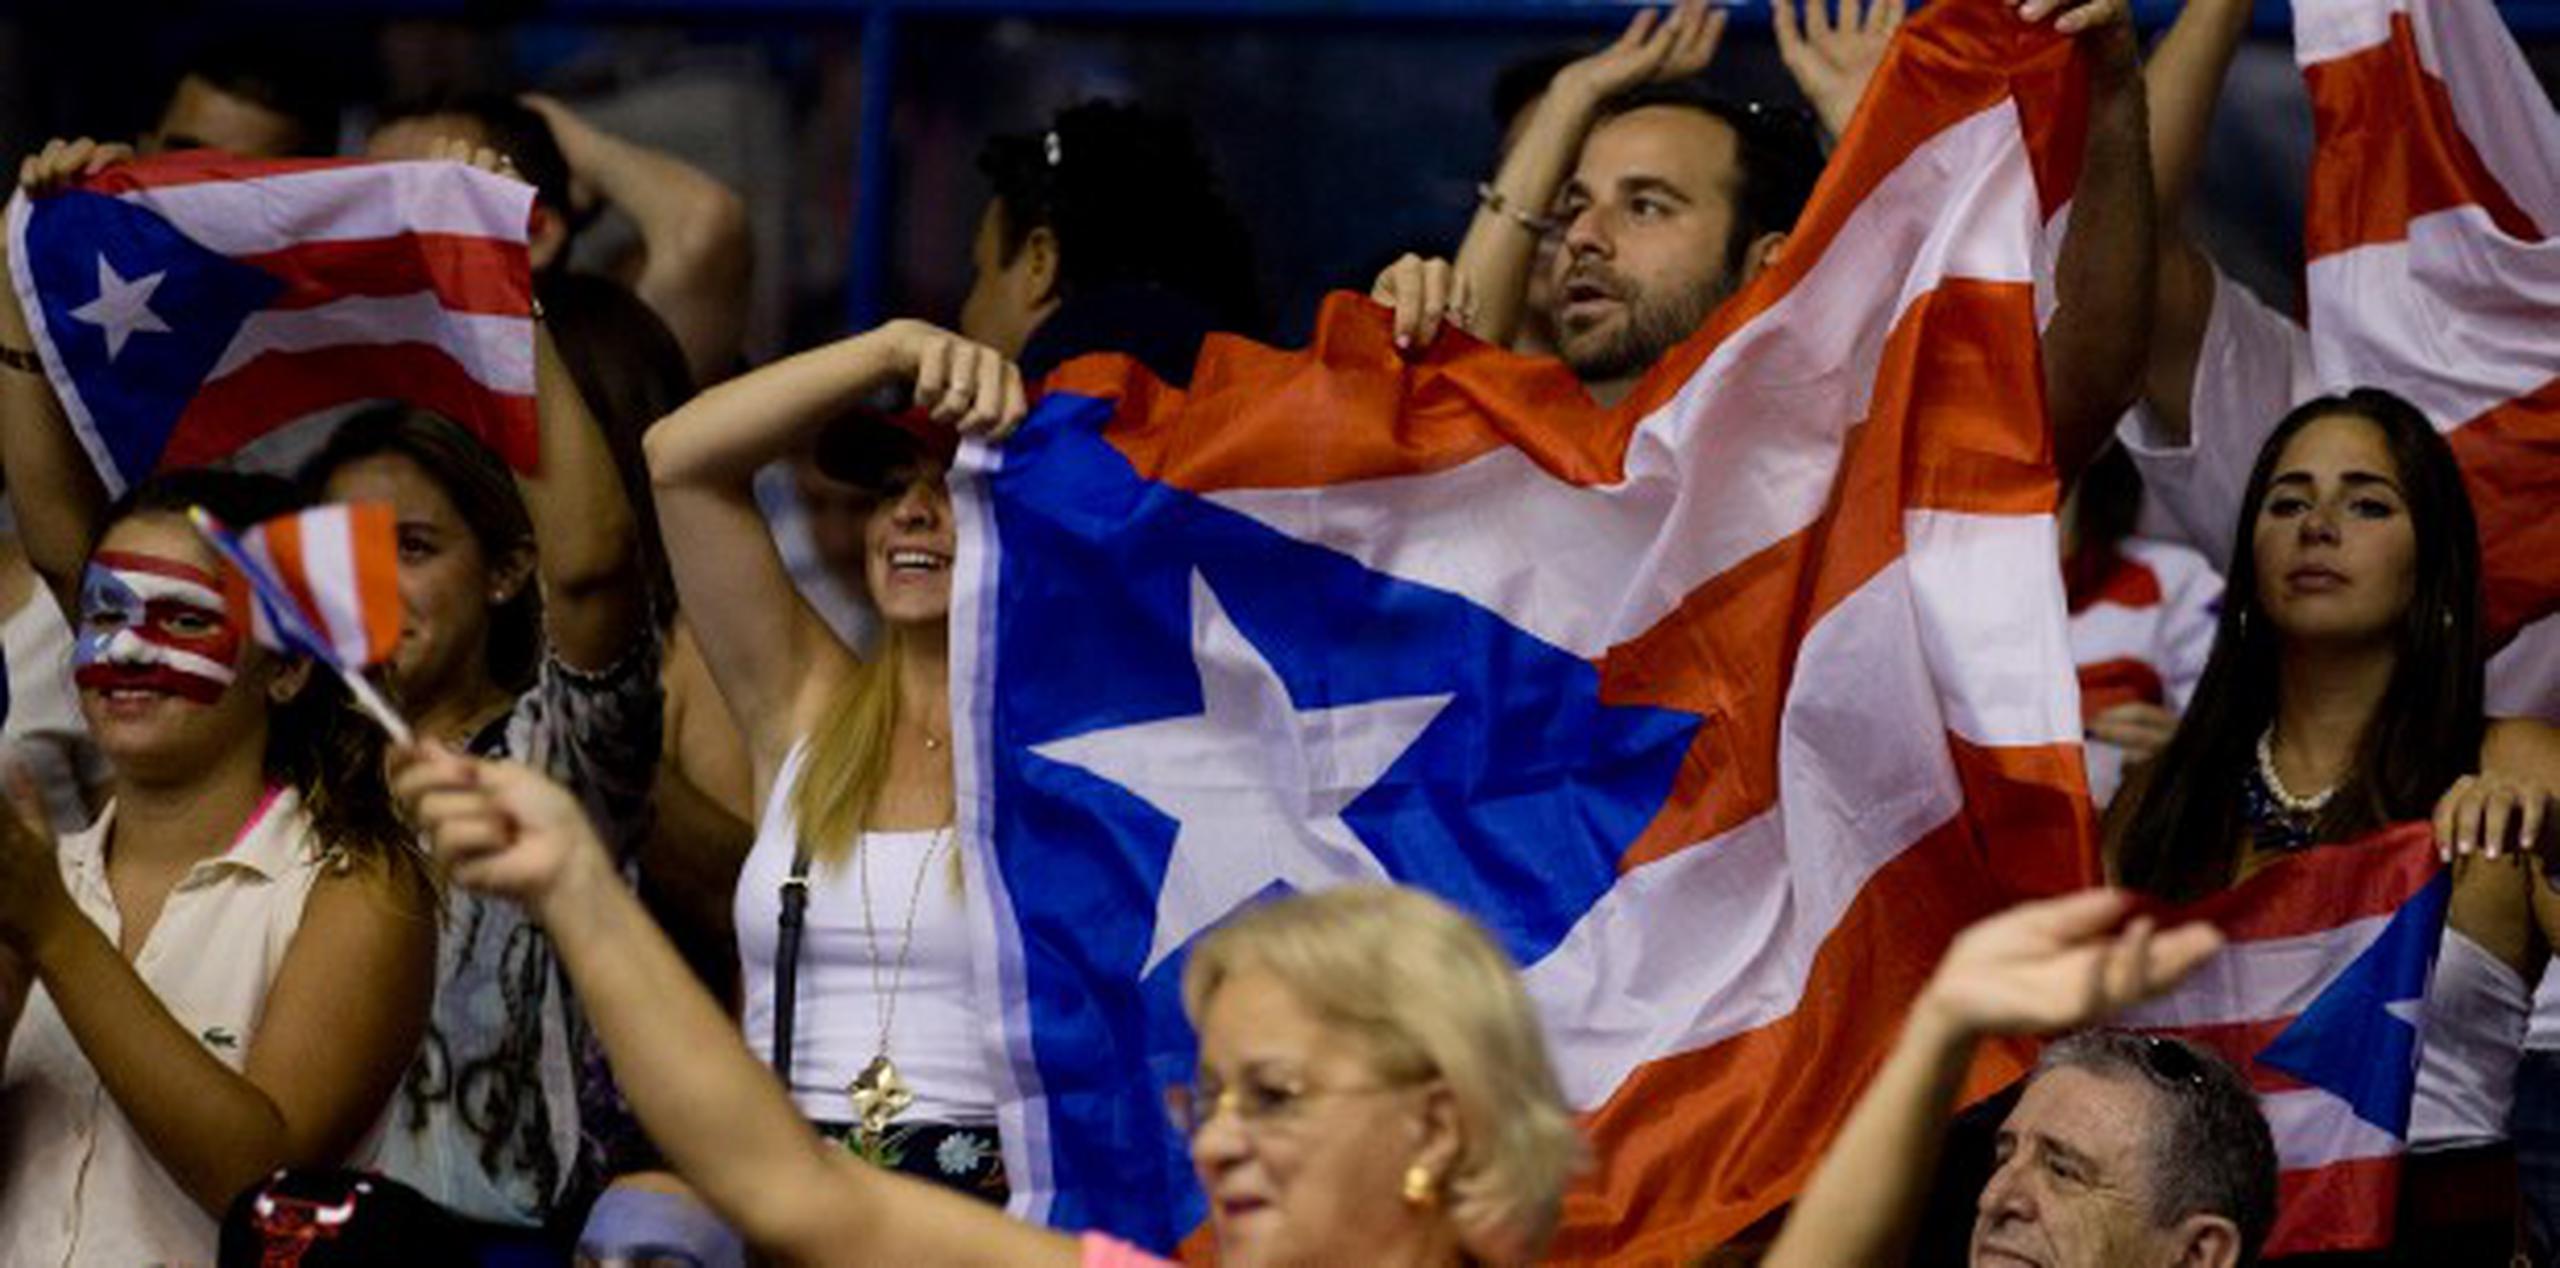 Los puertorriqueños presentes estaban identificados con los colores de la bandera de Puerto Rico. (Enviado especial / xavier. araujo@gfrmedia.com)
